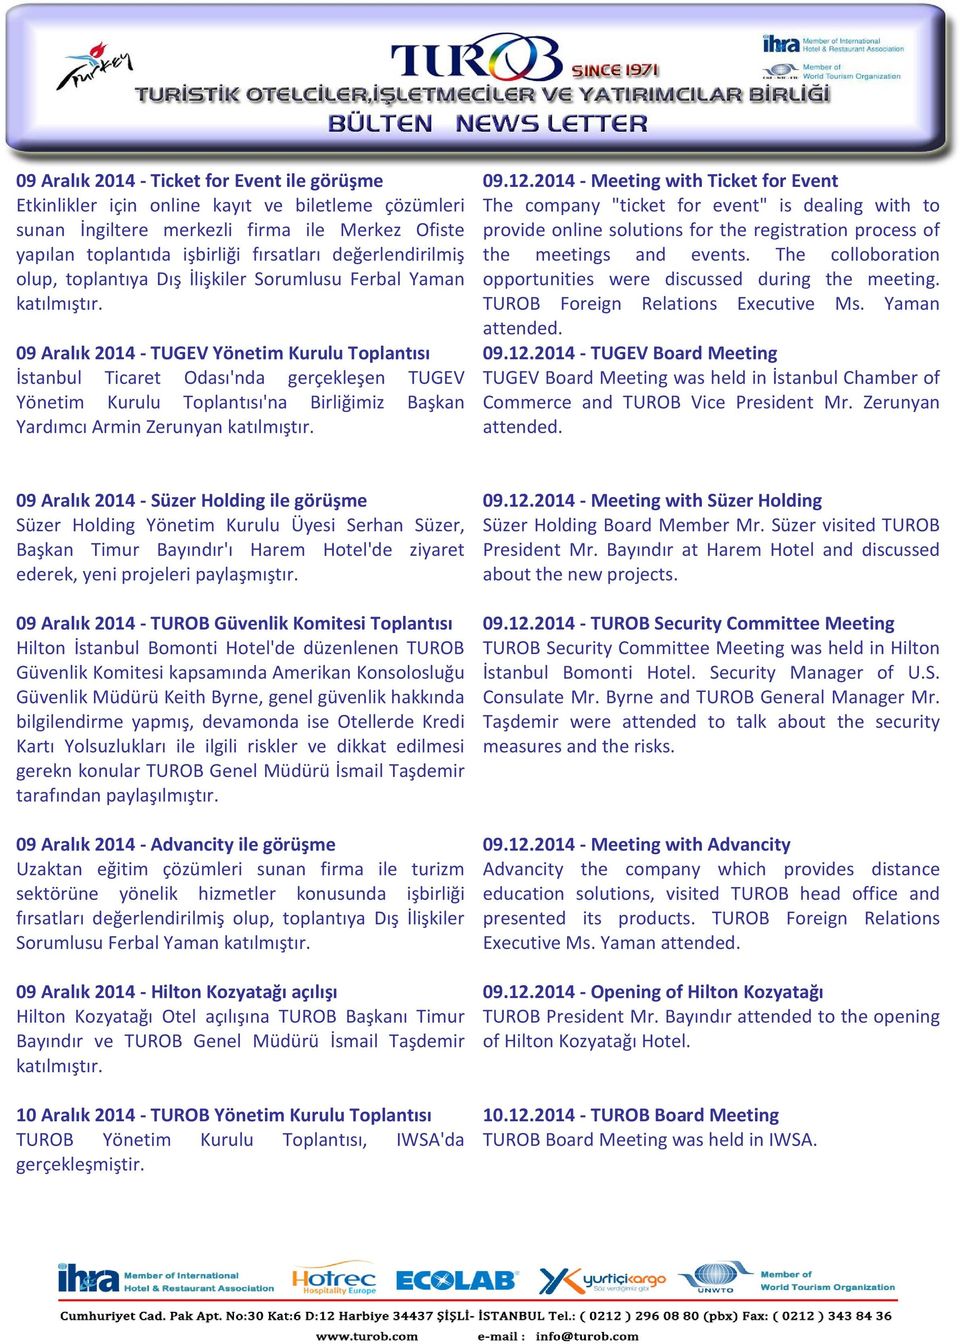 09 Aralık 2014 - TUGEV Yönetim Kurulu Toplantısı İstanbul Ticaret Odası'nda gerçekleşen TUGEV Yönetim Kurulu Toplantısı'na Birliğimiz Başkan Yardımcı Armin Zerunyan katılmıştır. 09.12.